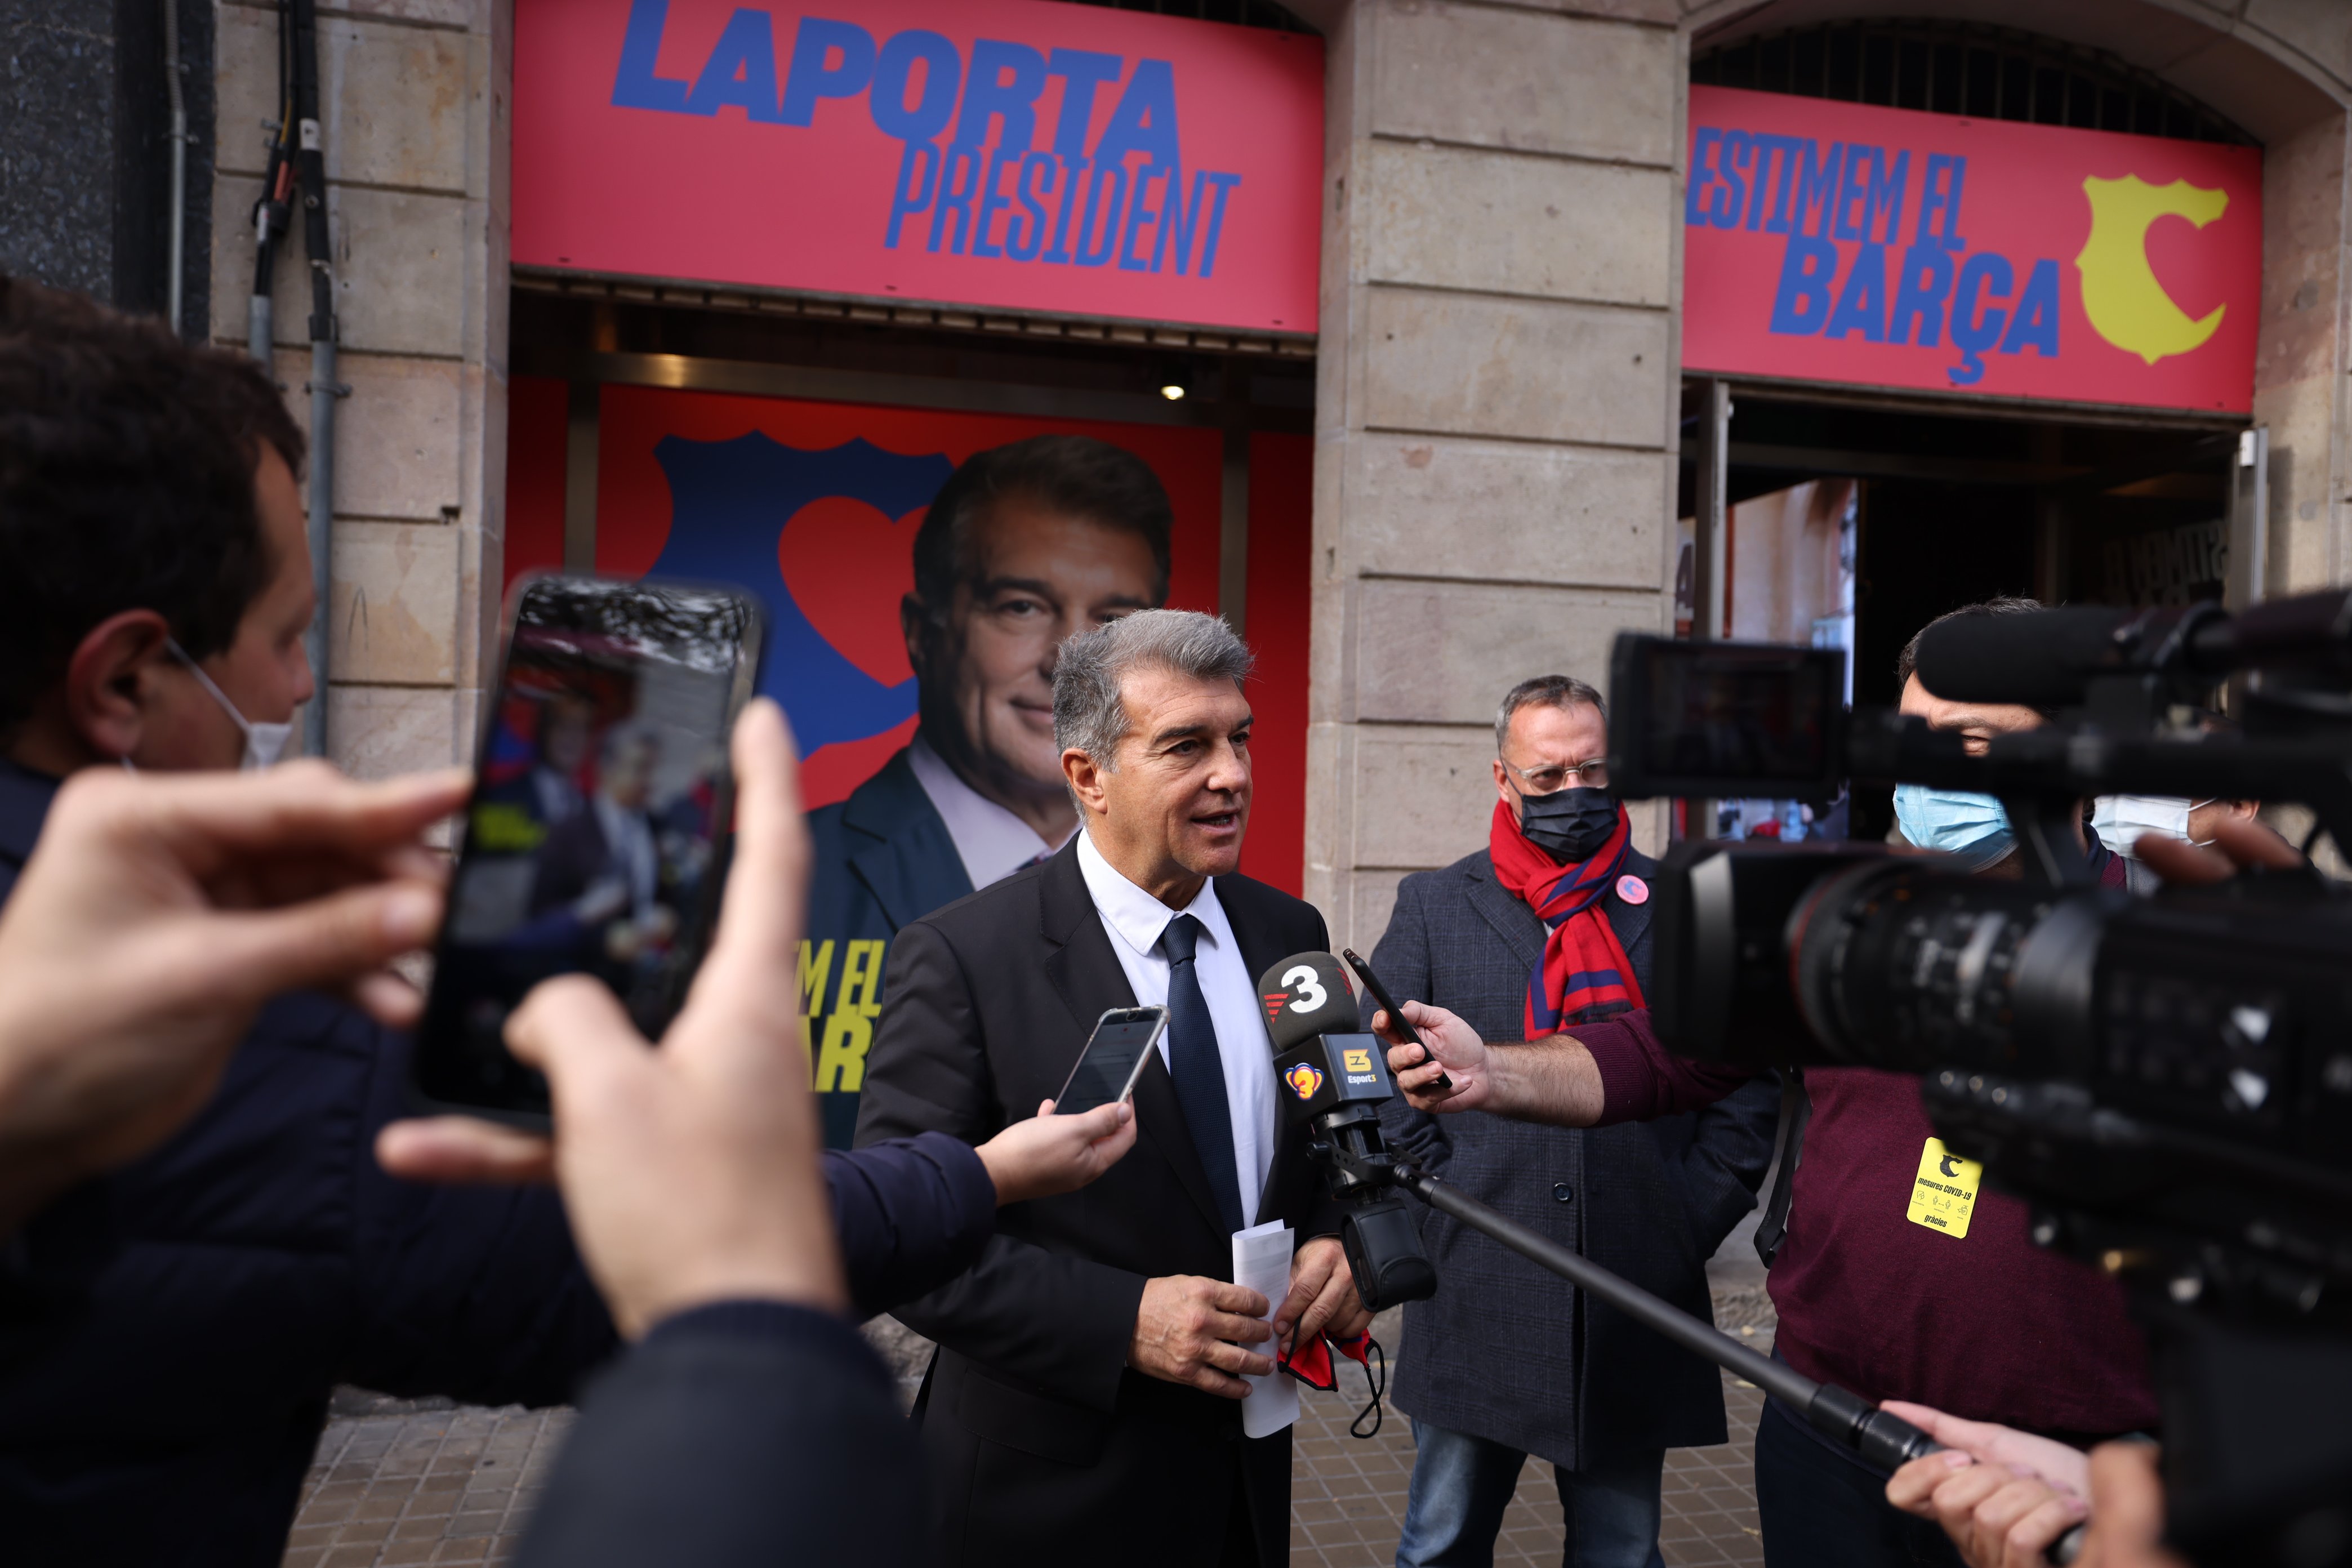 Laporta, esperançat per tornar a ser president del Barça: "Comença el partit"